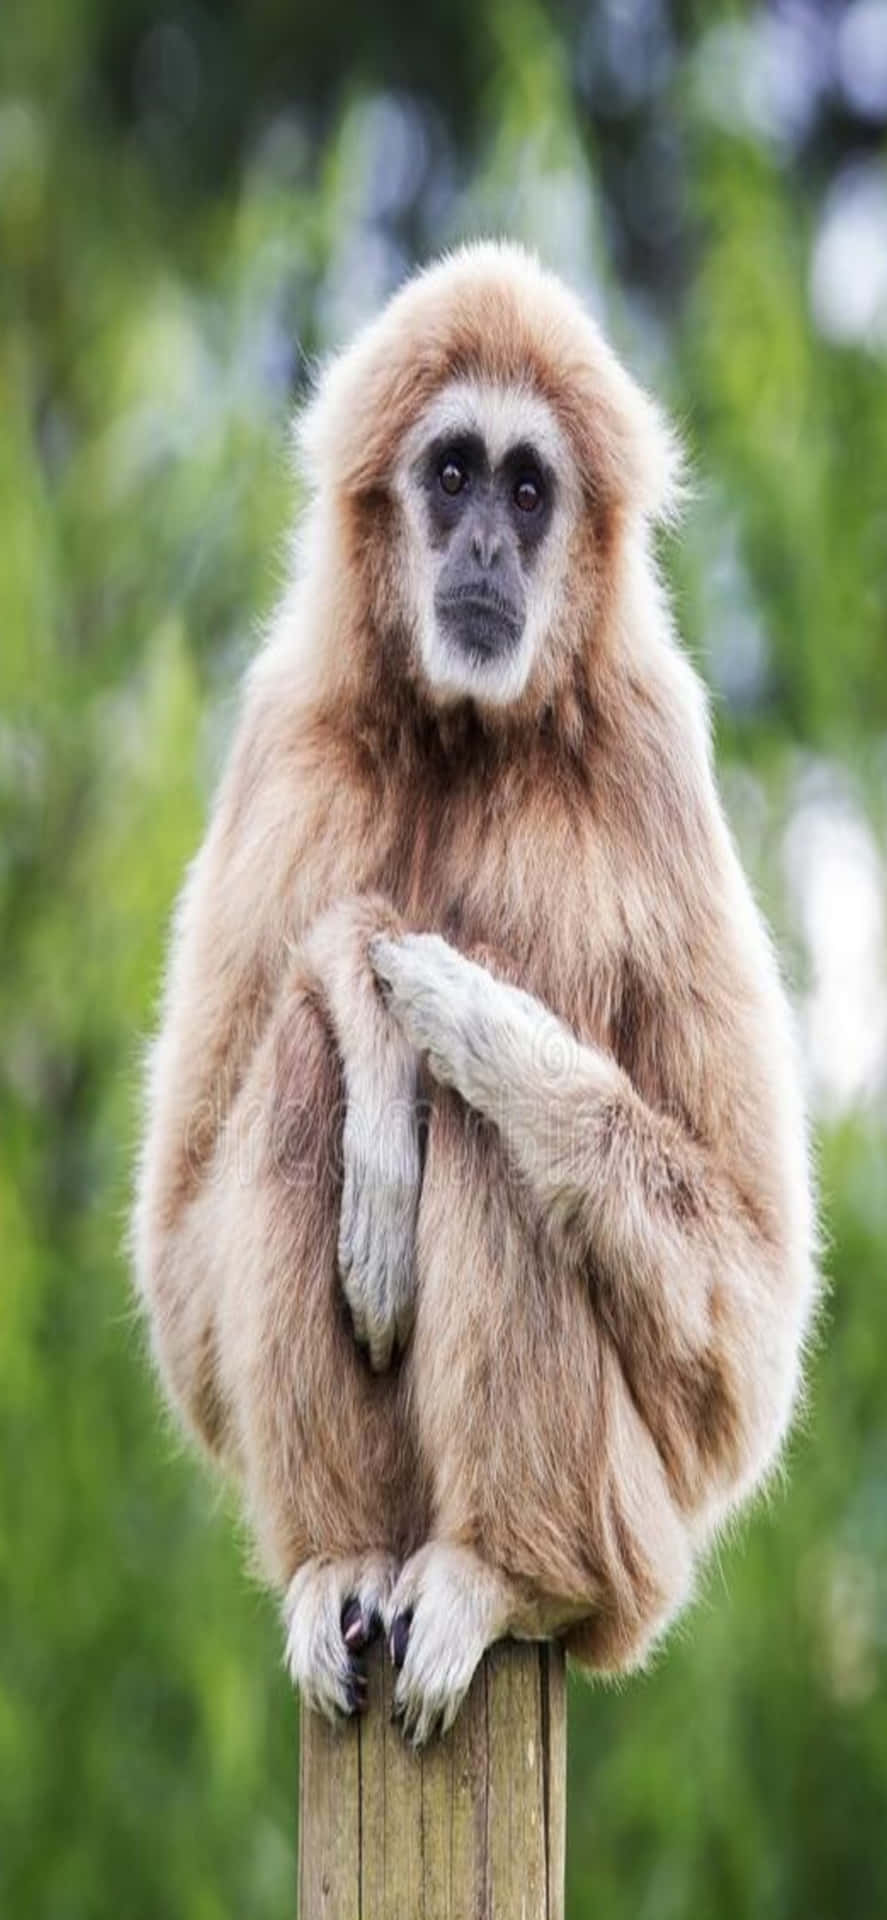 Iphonex Bakgrund Gibbon Gibbon Sittandes På En Stolpe